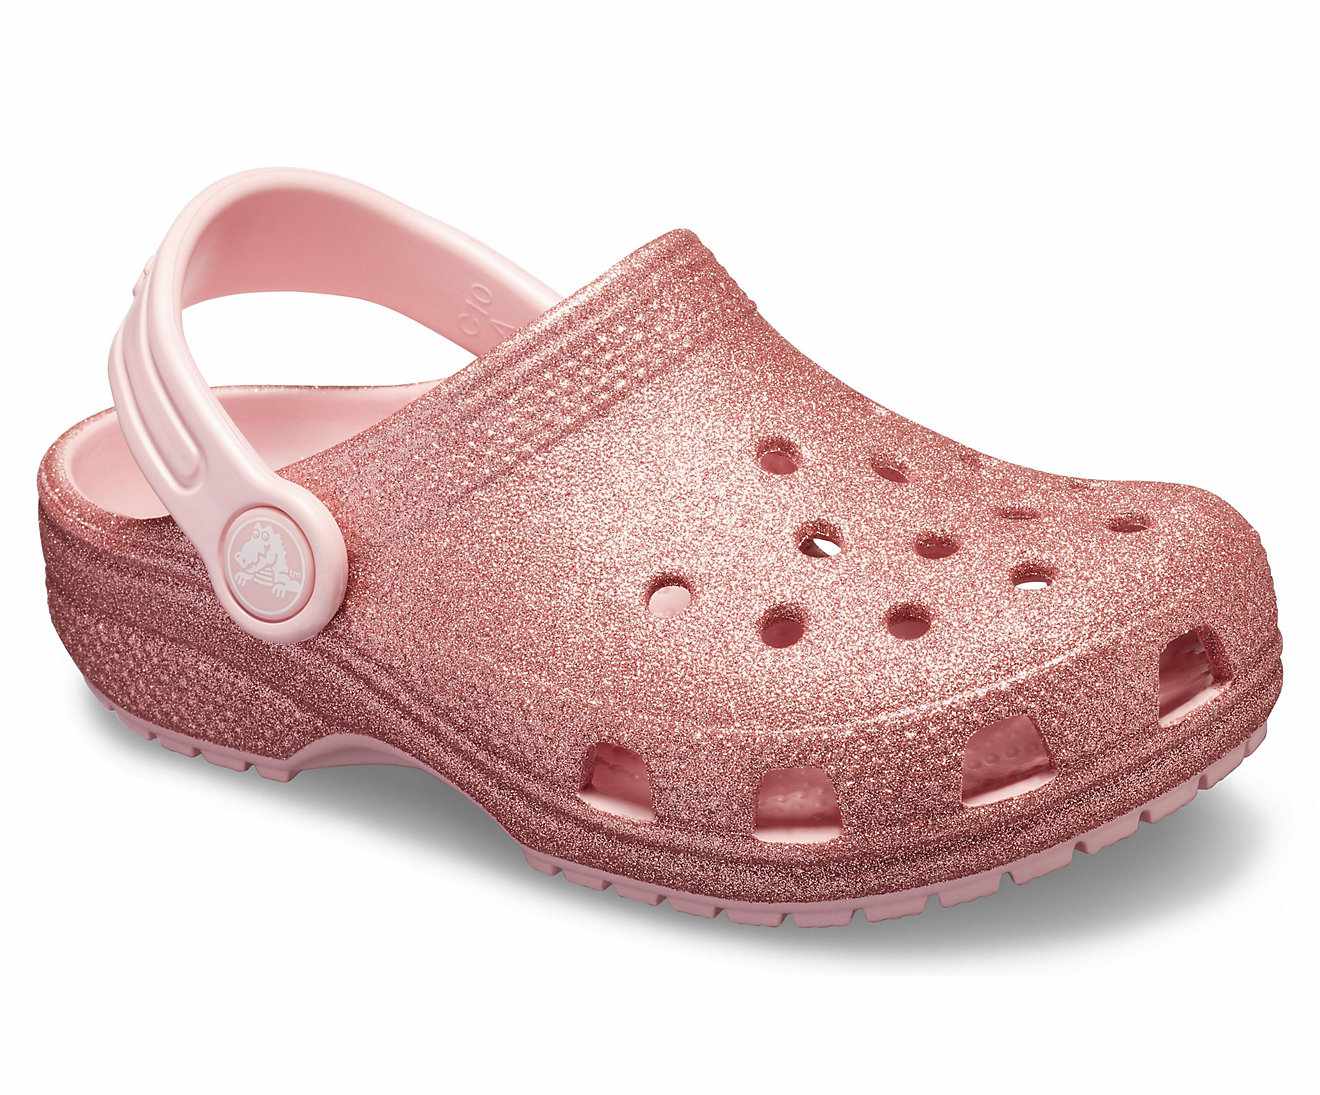 For My Boyfriend's Niece: Pink Sparkly Crocs